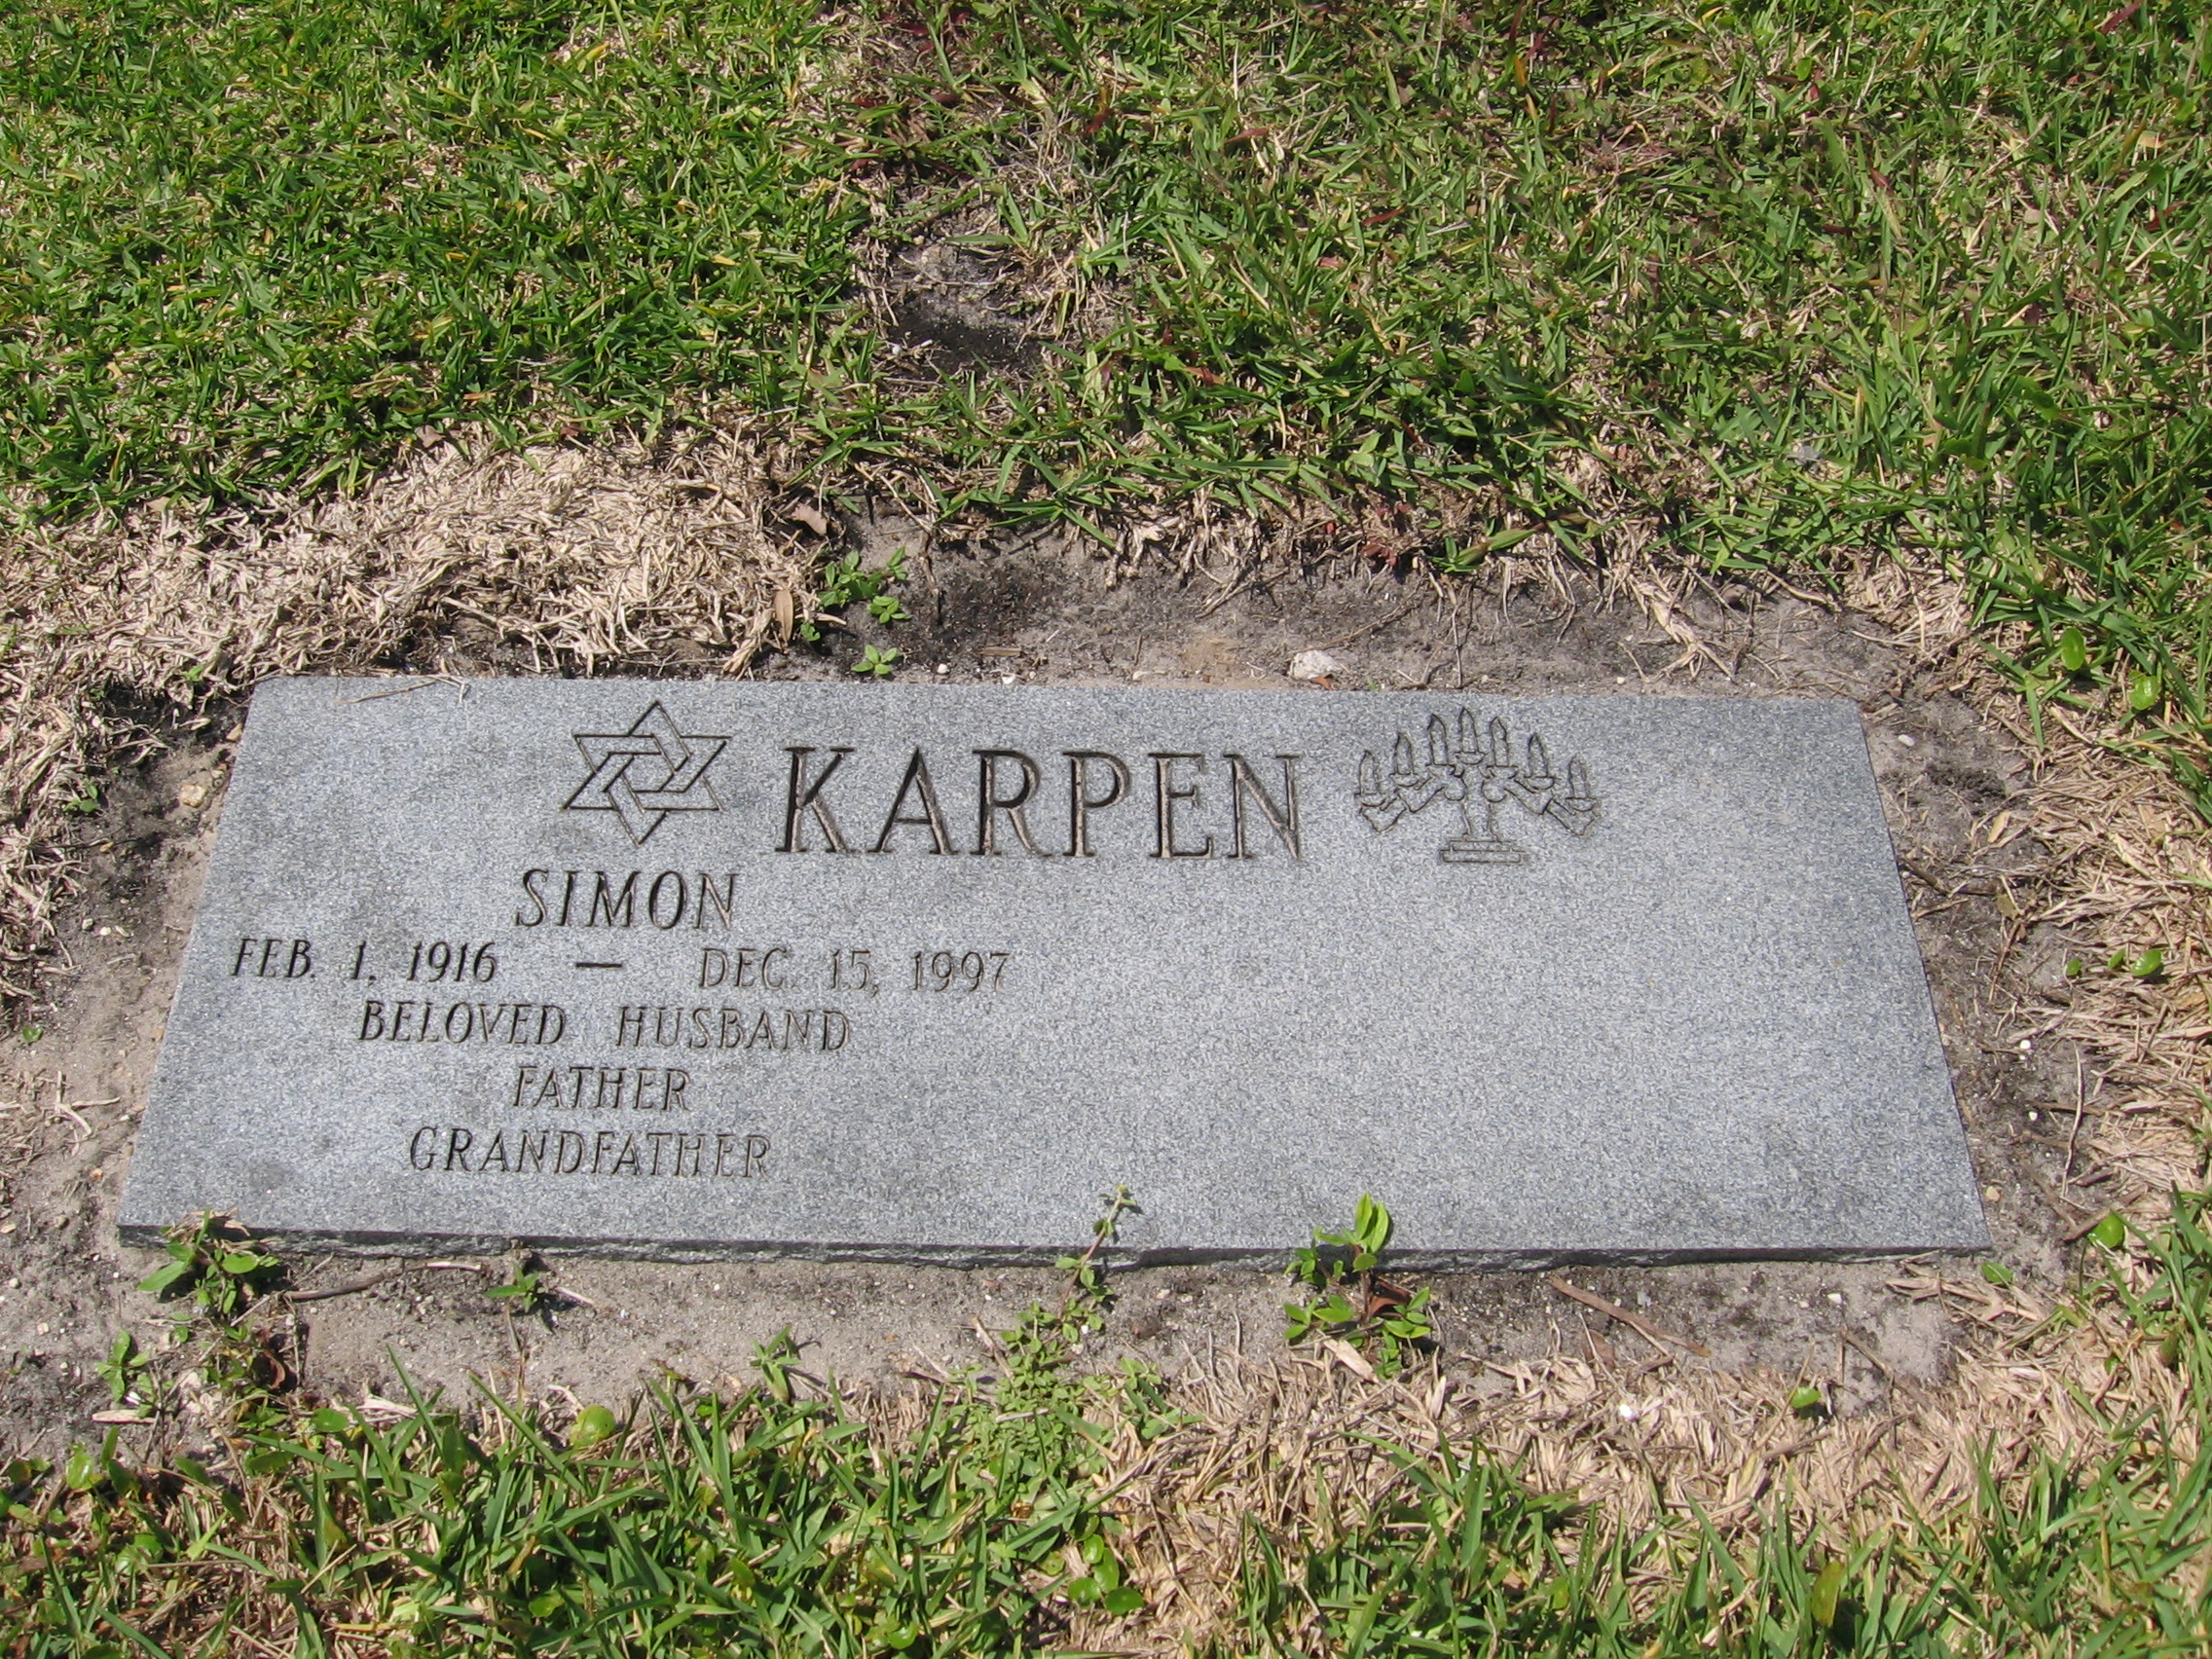 Simon Karpen